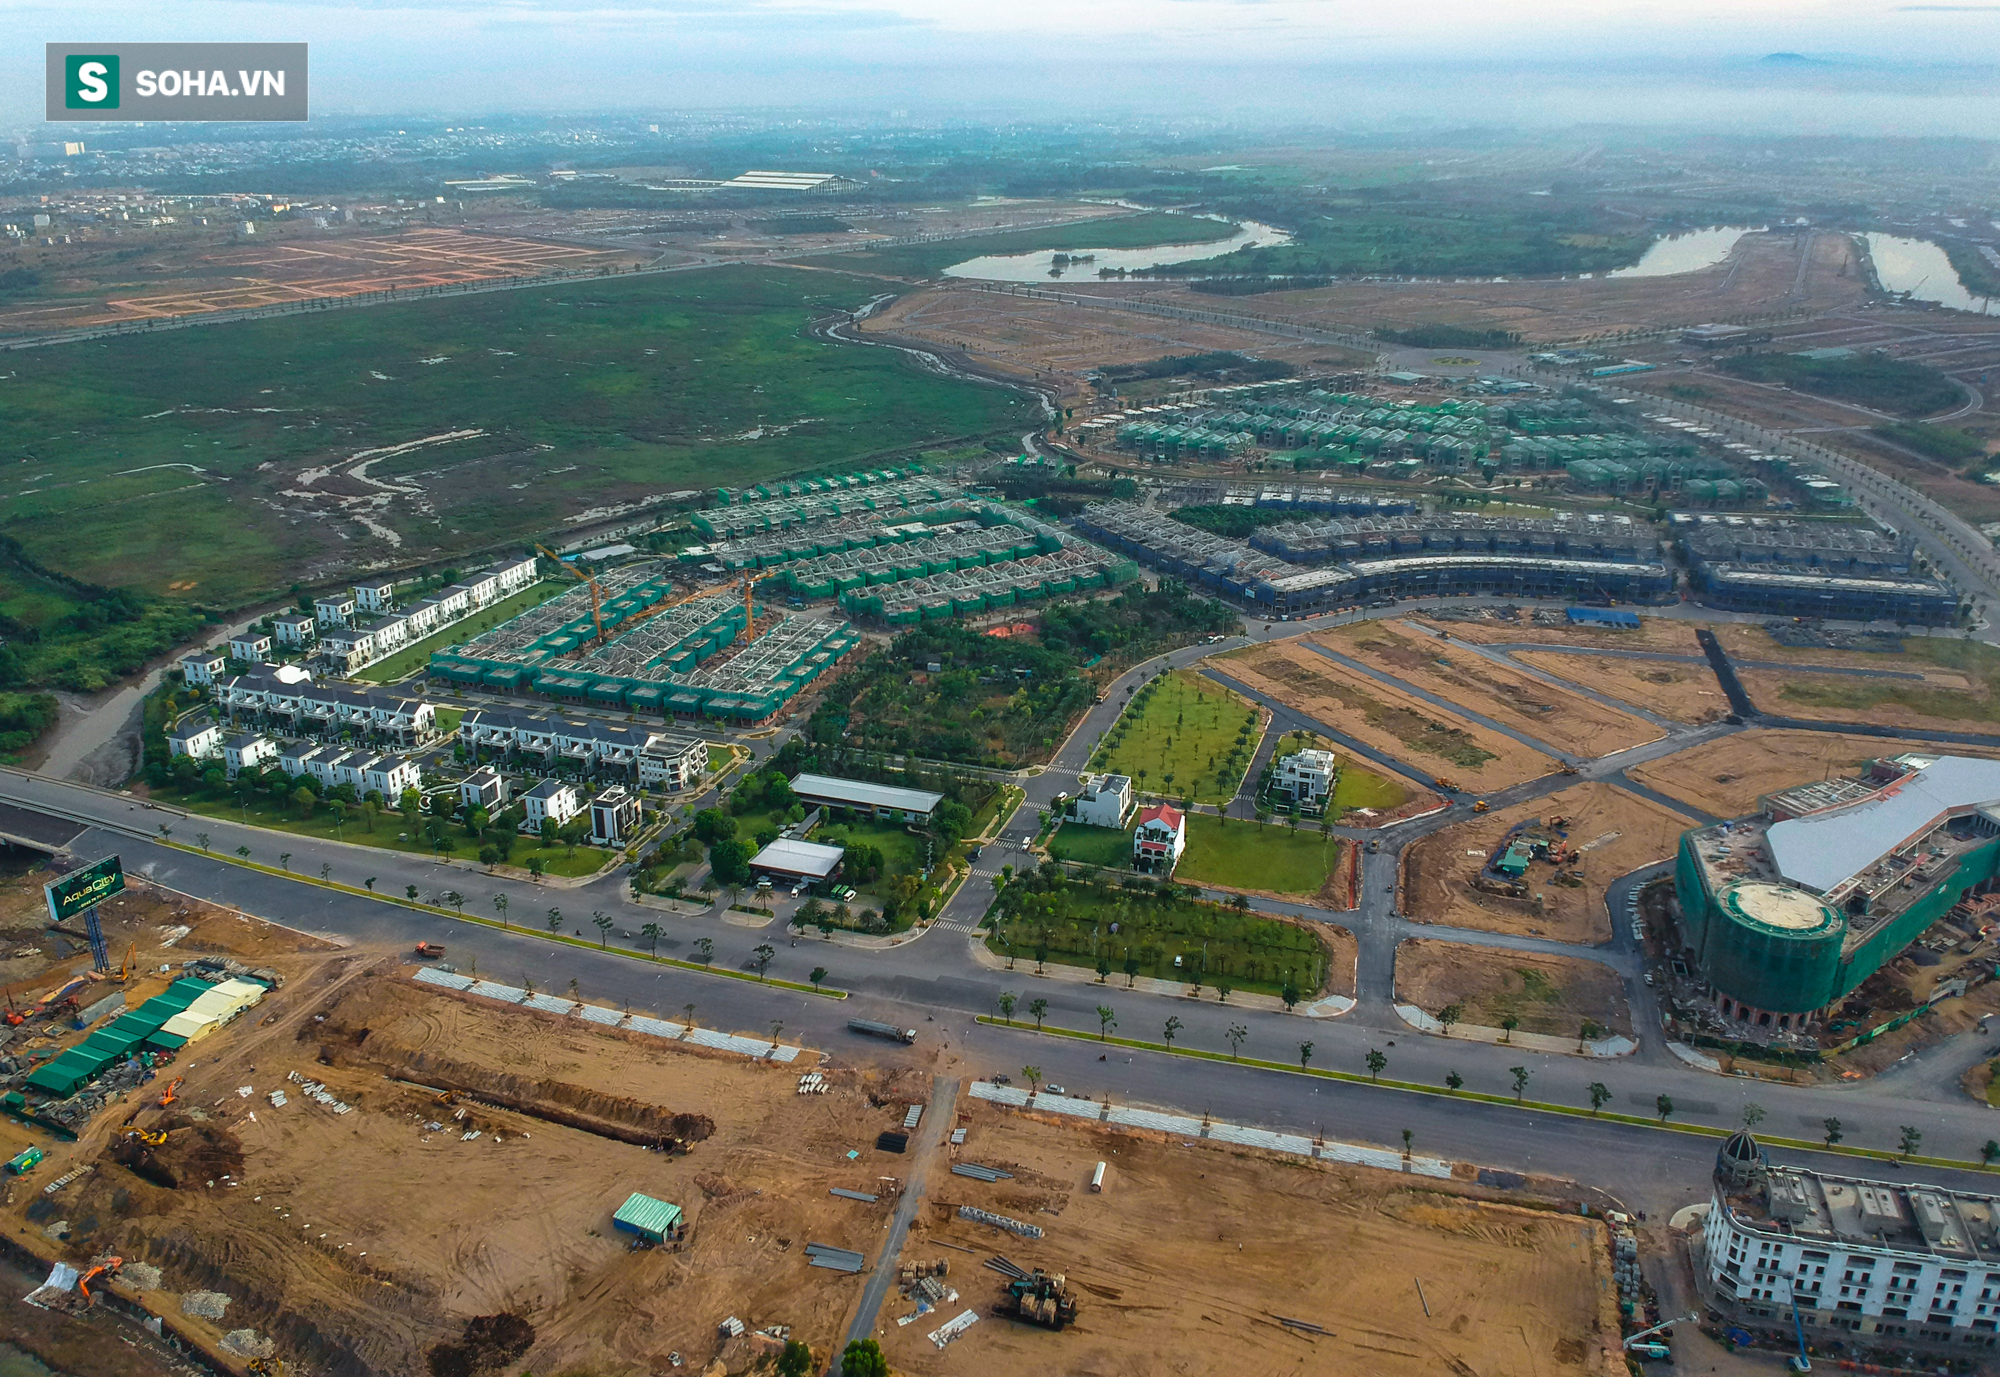  Sân bay lớn nhất Việt Nam chưa hình thành, gần đó đã có đô thị rộng hơn cả quận 1, TP.HCM - Ảnh 7.